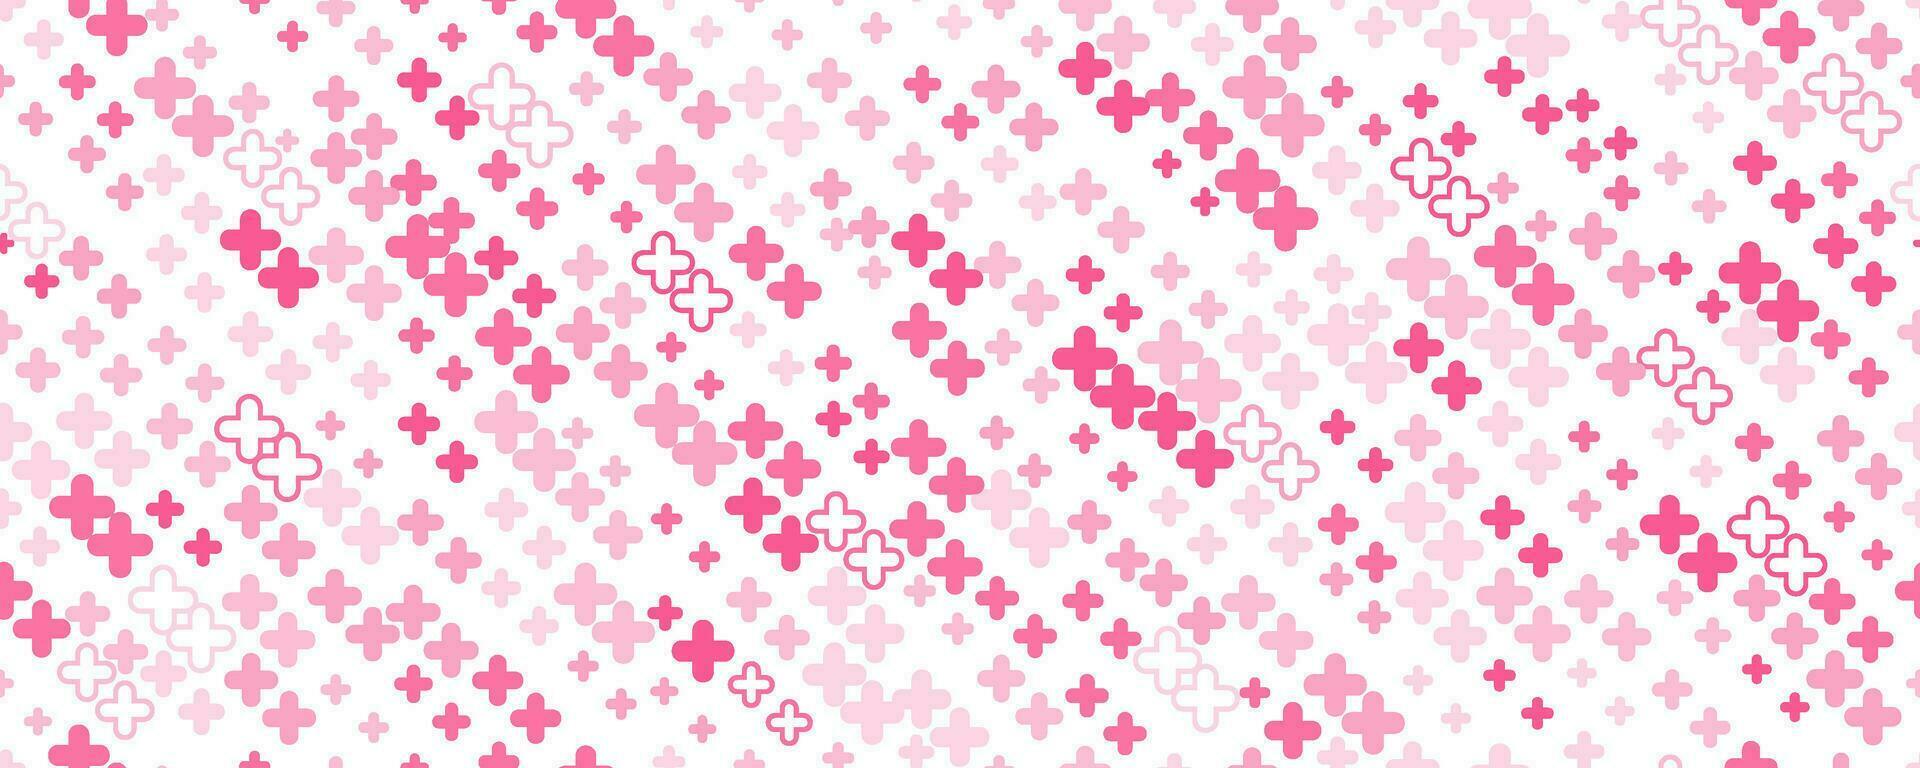 medisch kruis en plus achtergrond. abstract naadloos roze patroon voor ziekenhuis en apotheek. meetkundig vormen ornament. vector backdrop